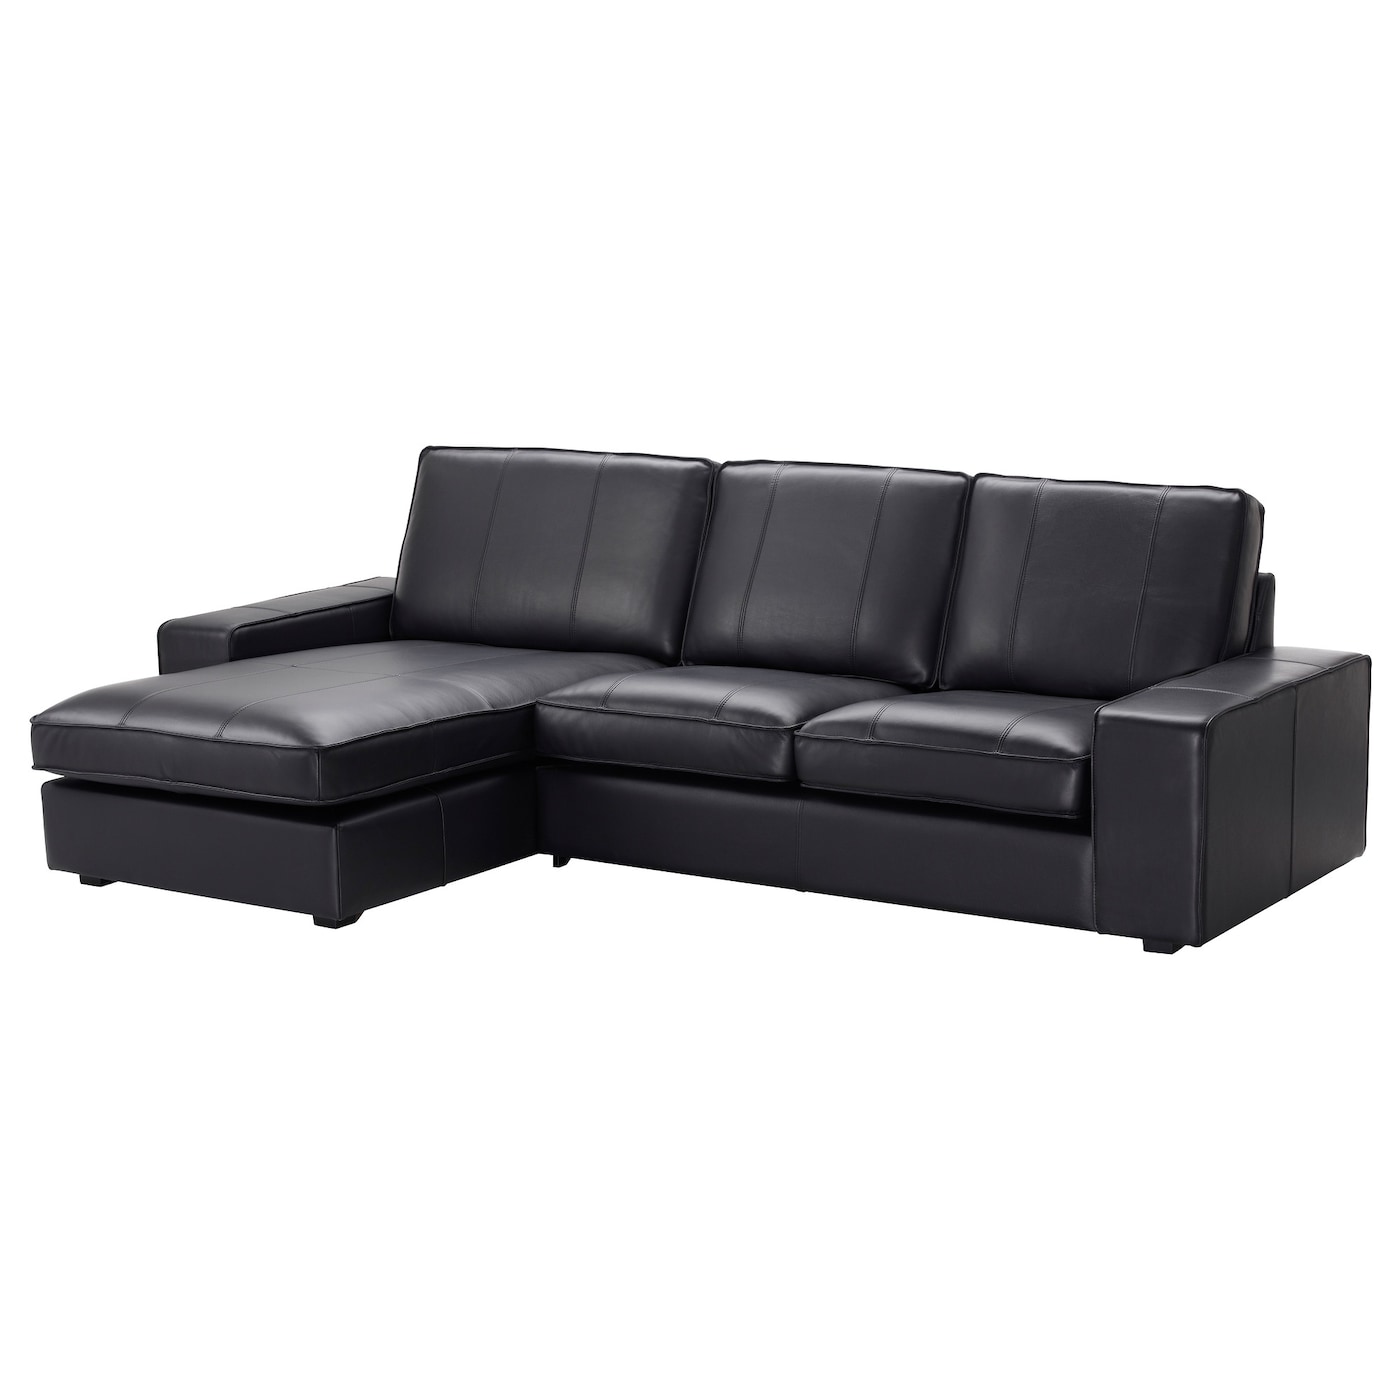 3-местный диван и шезлонг - IKEA KIVIK, 83x163x280см, черный, кожа, КИВИК ИКЕА